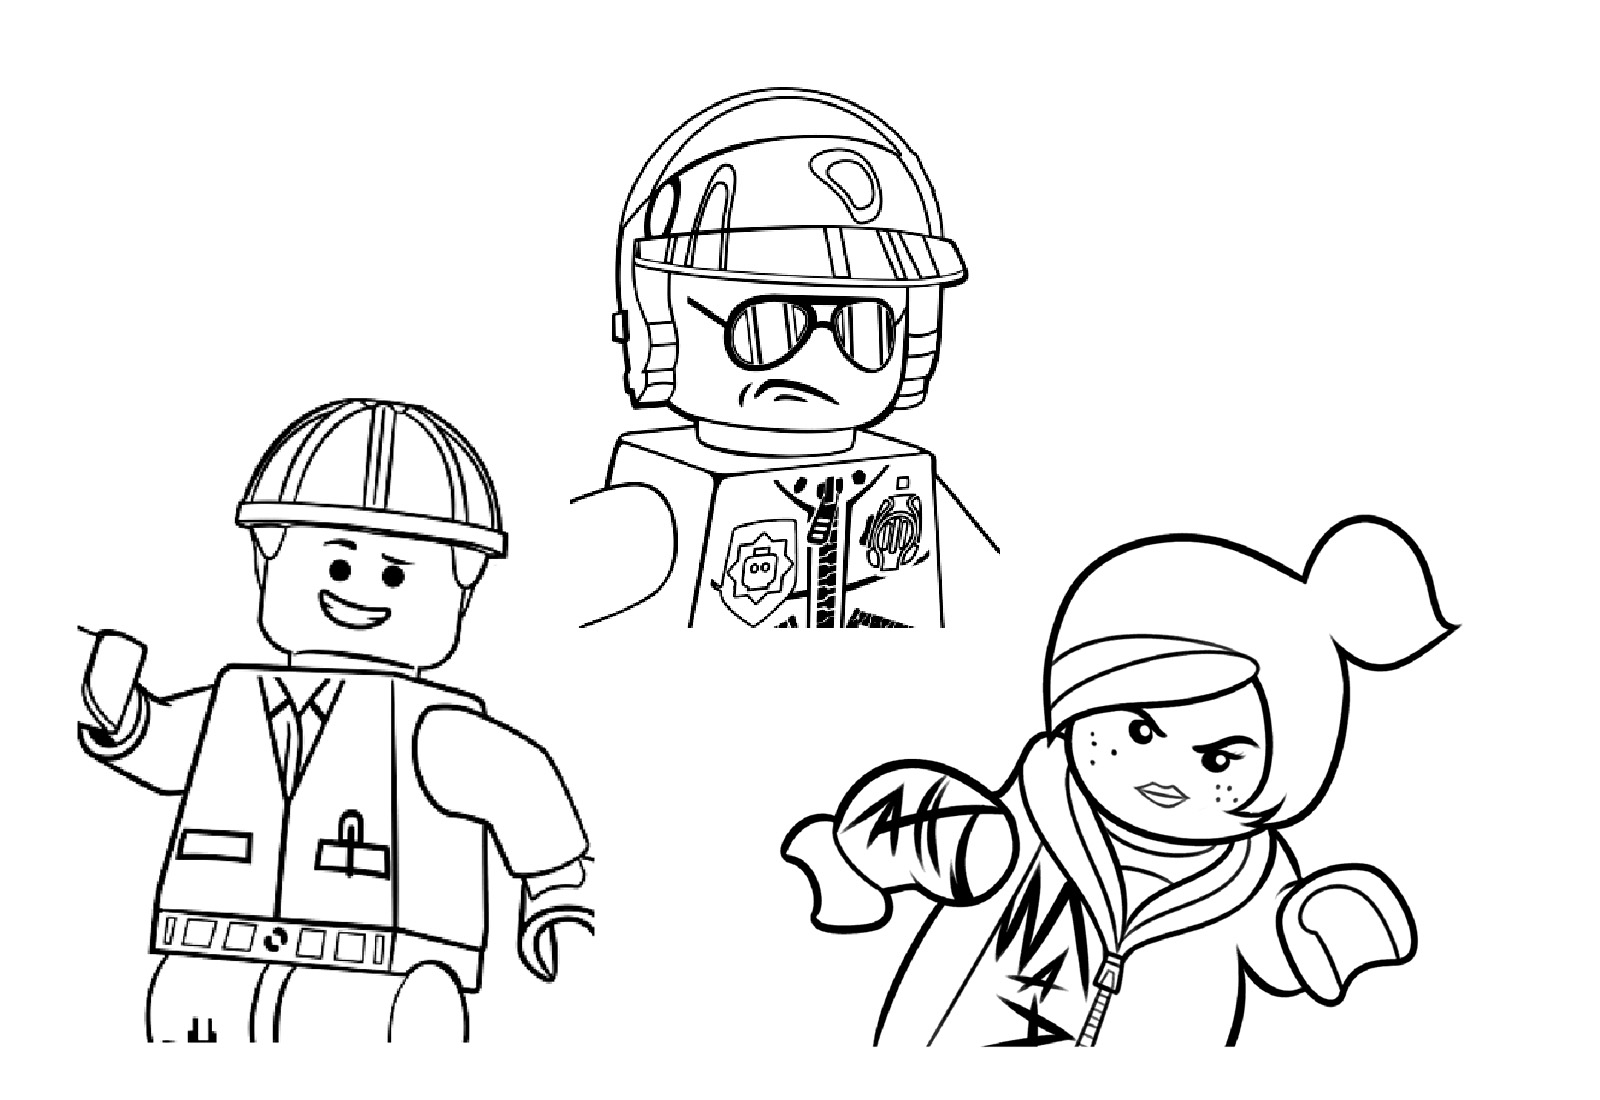 Montaje de 3 personajes de la Lego Película, sobre fondo blanco